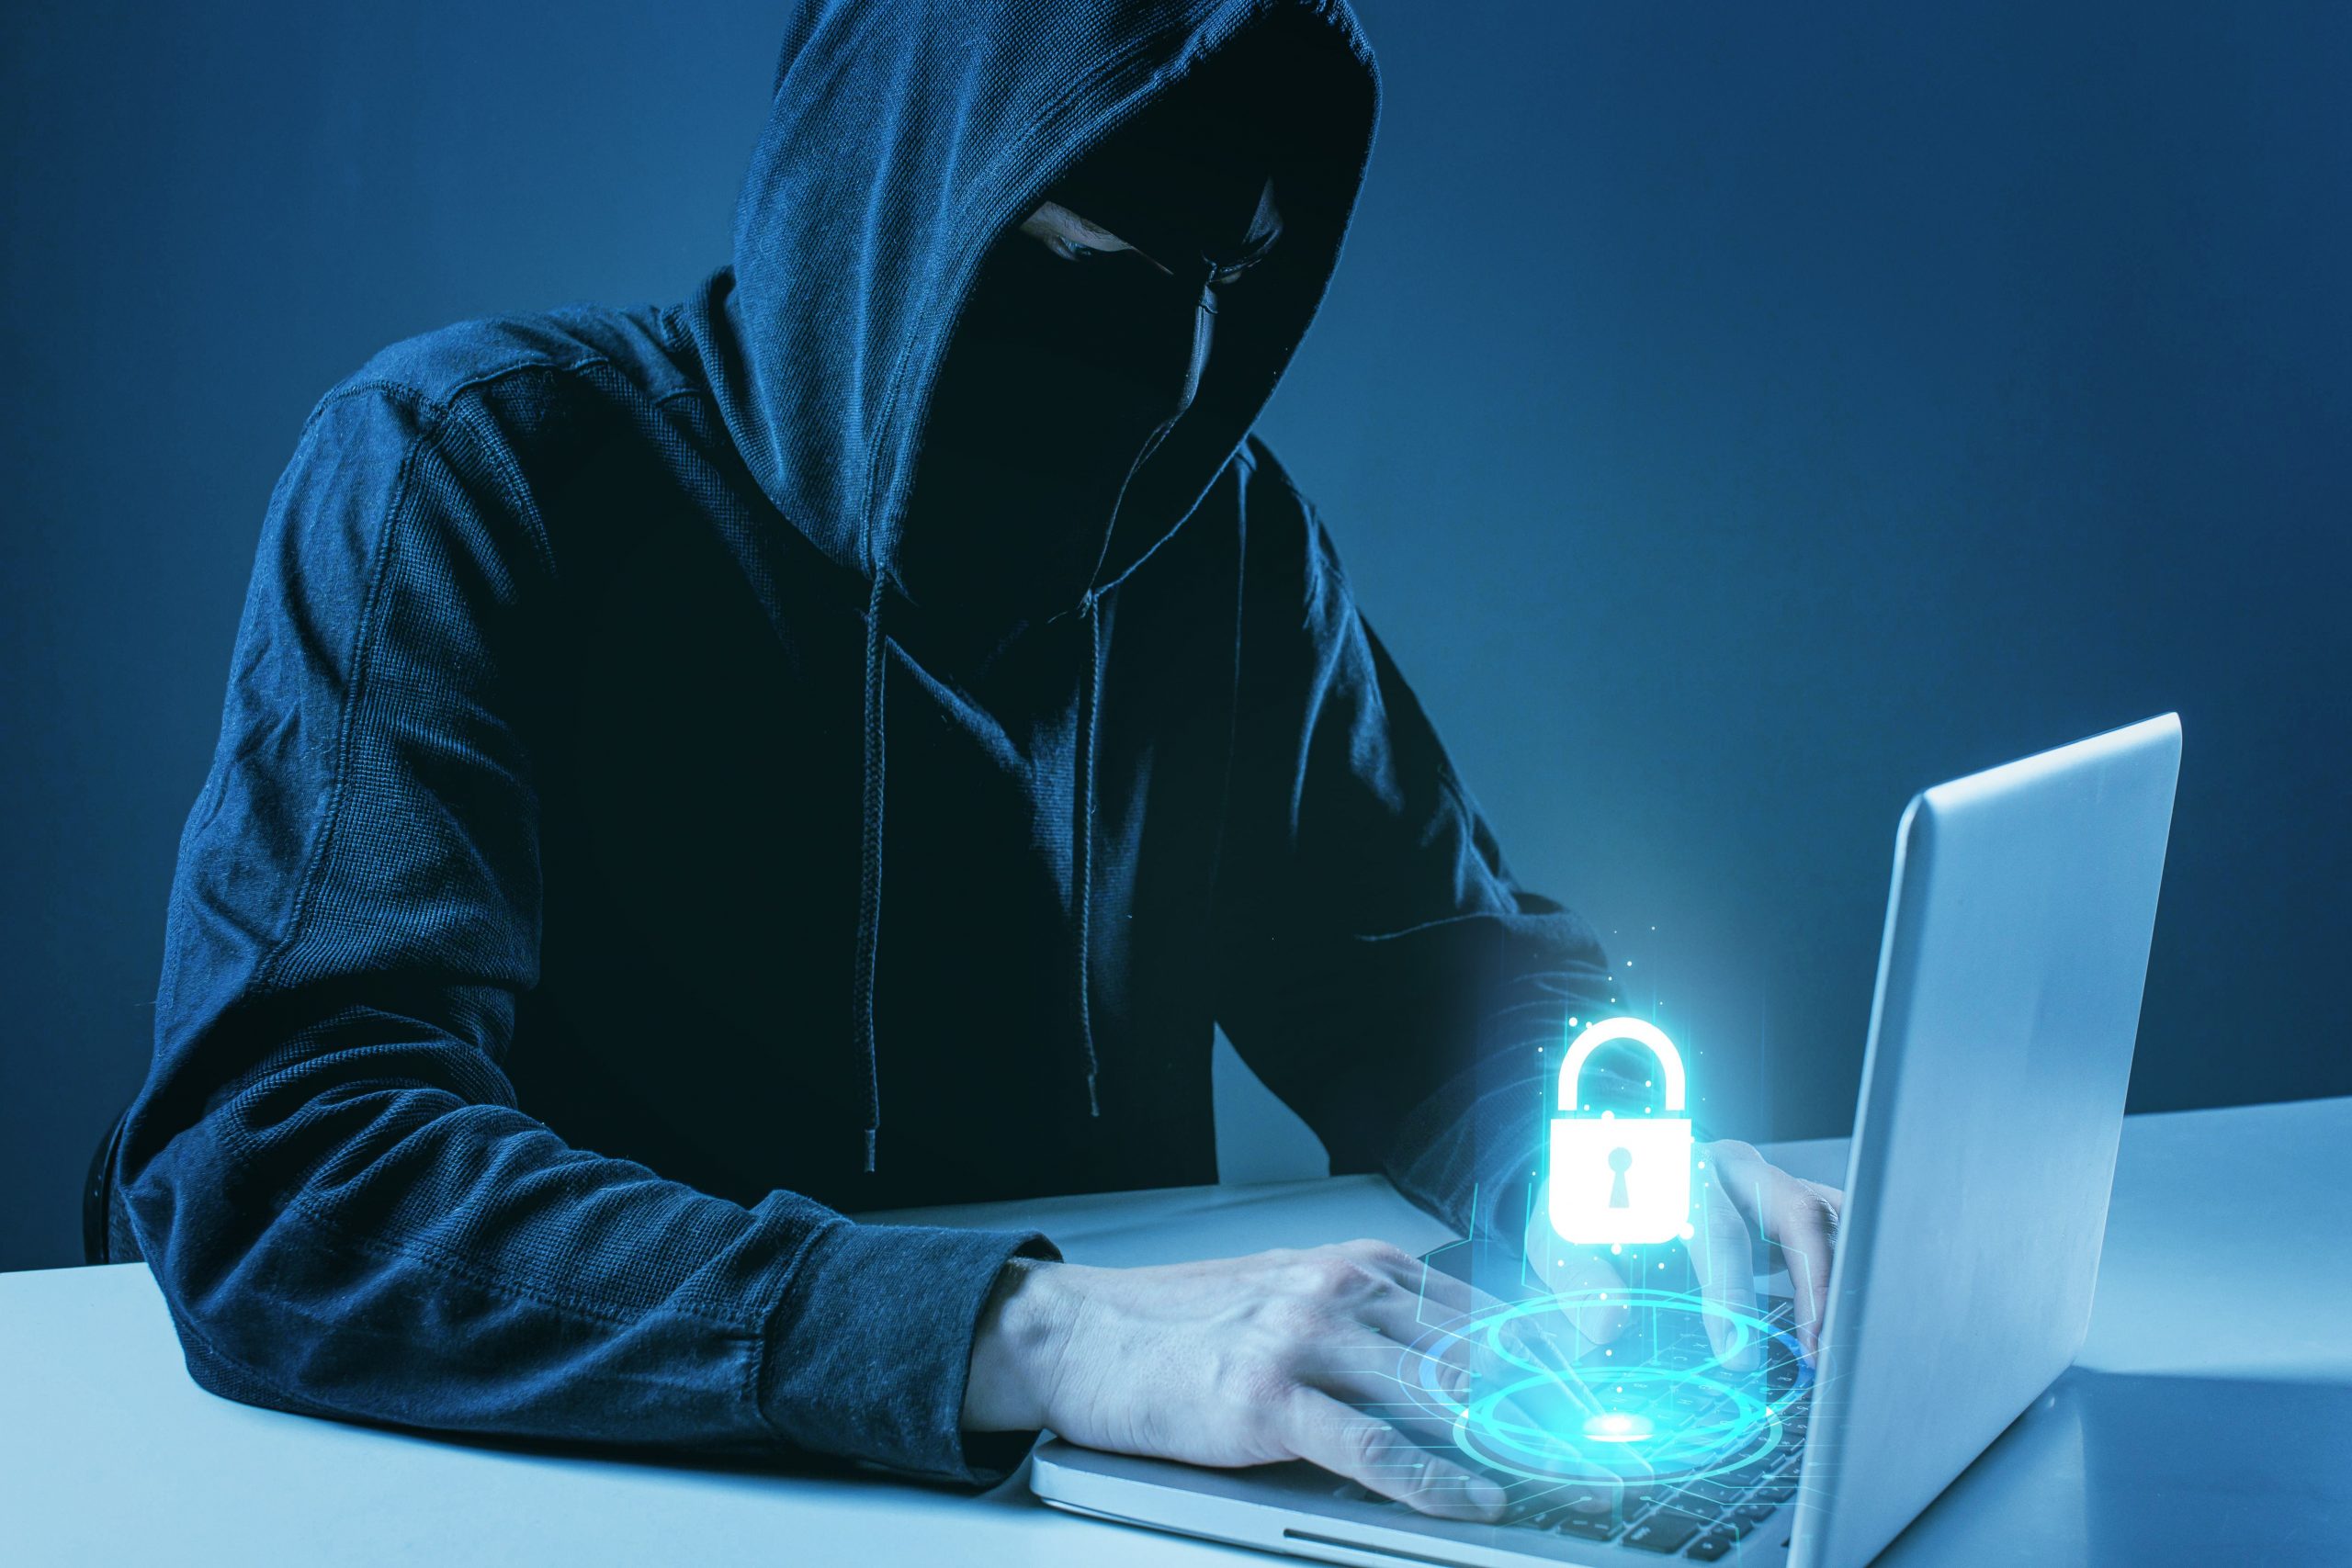 Cuidado com navegador falso! Nova onda de ataque rouba dado e invade PC